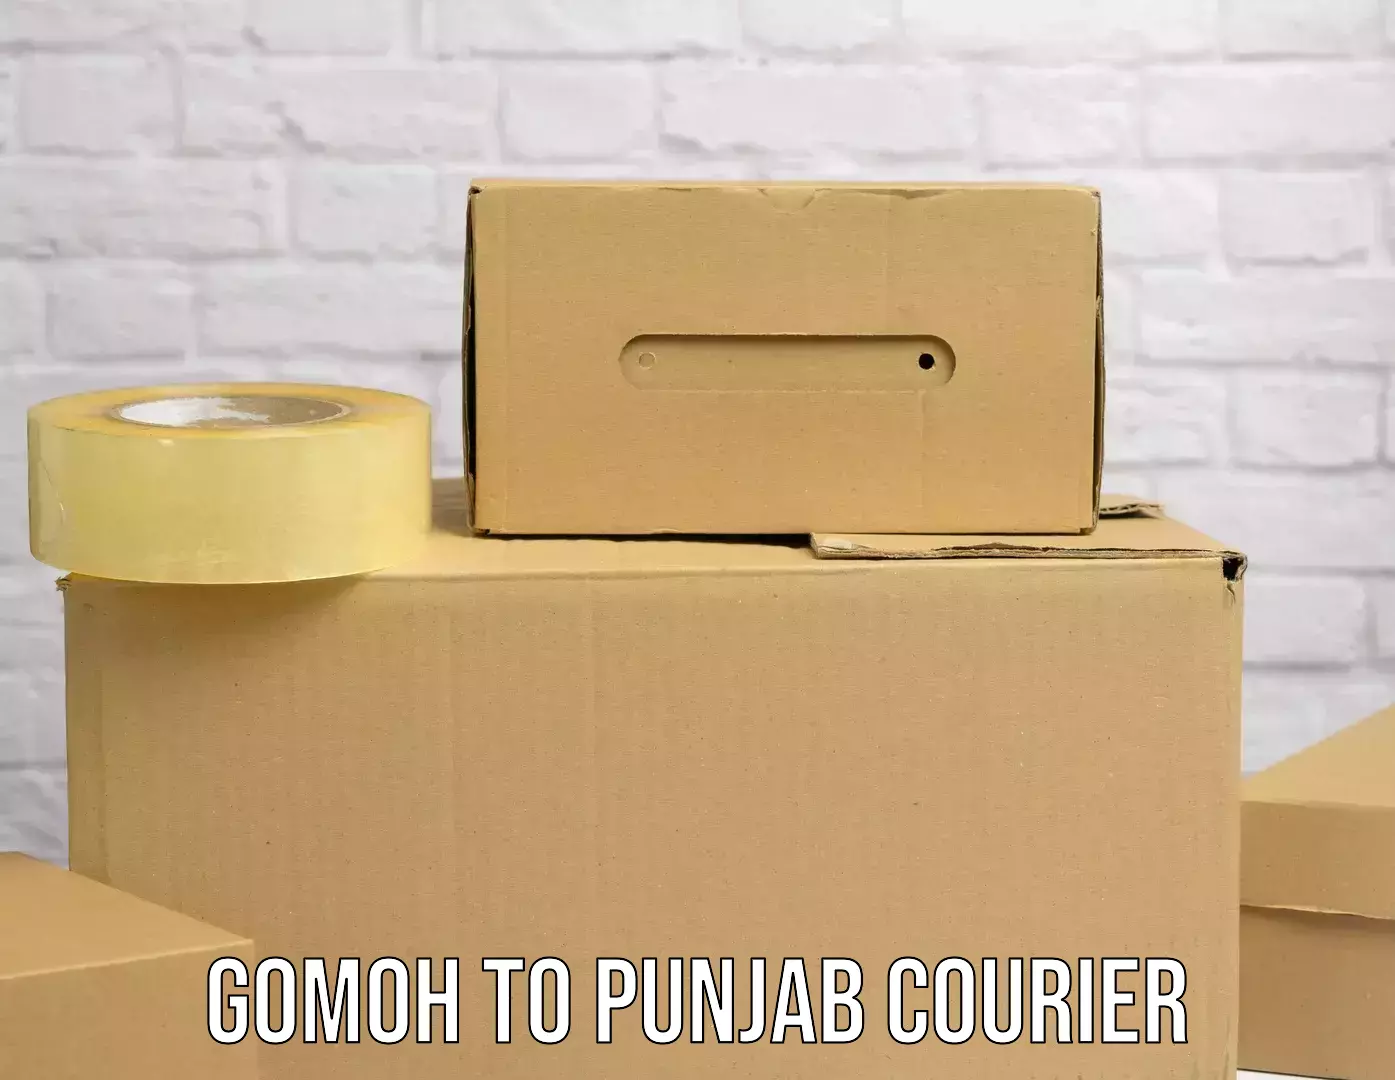 Ground shipping Gomoh to Punjab